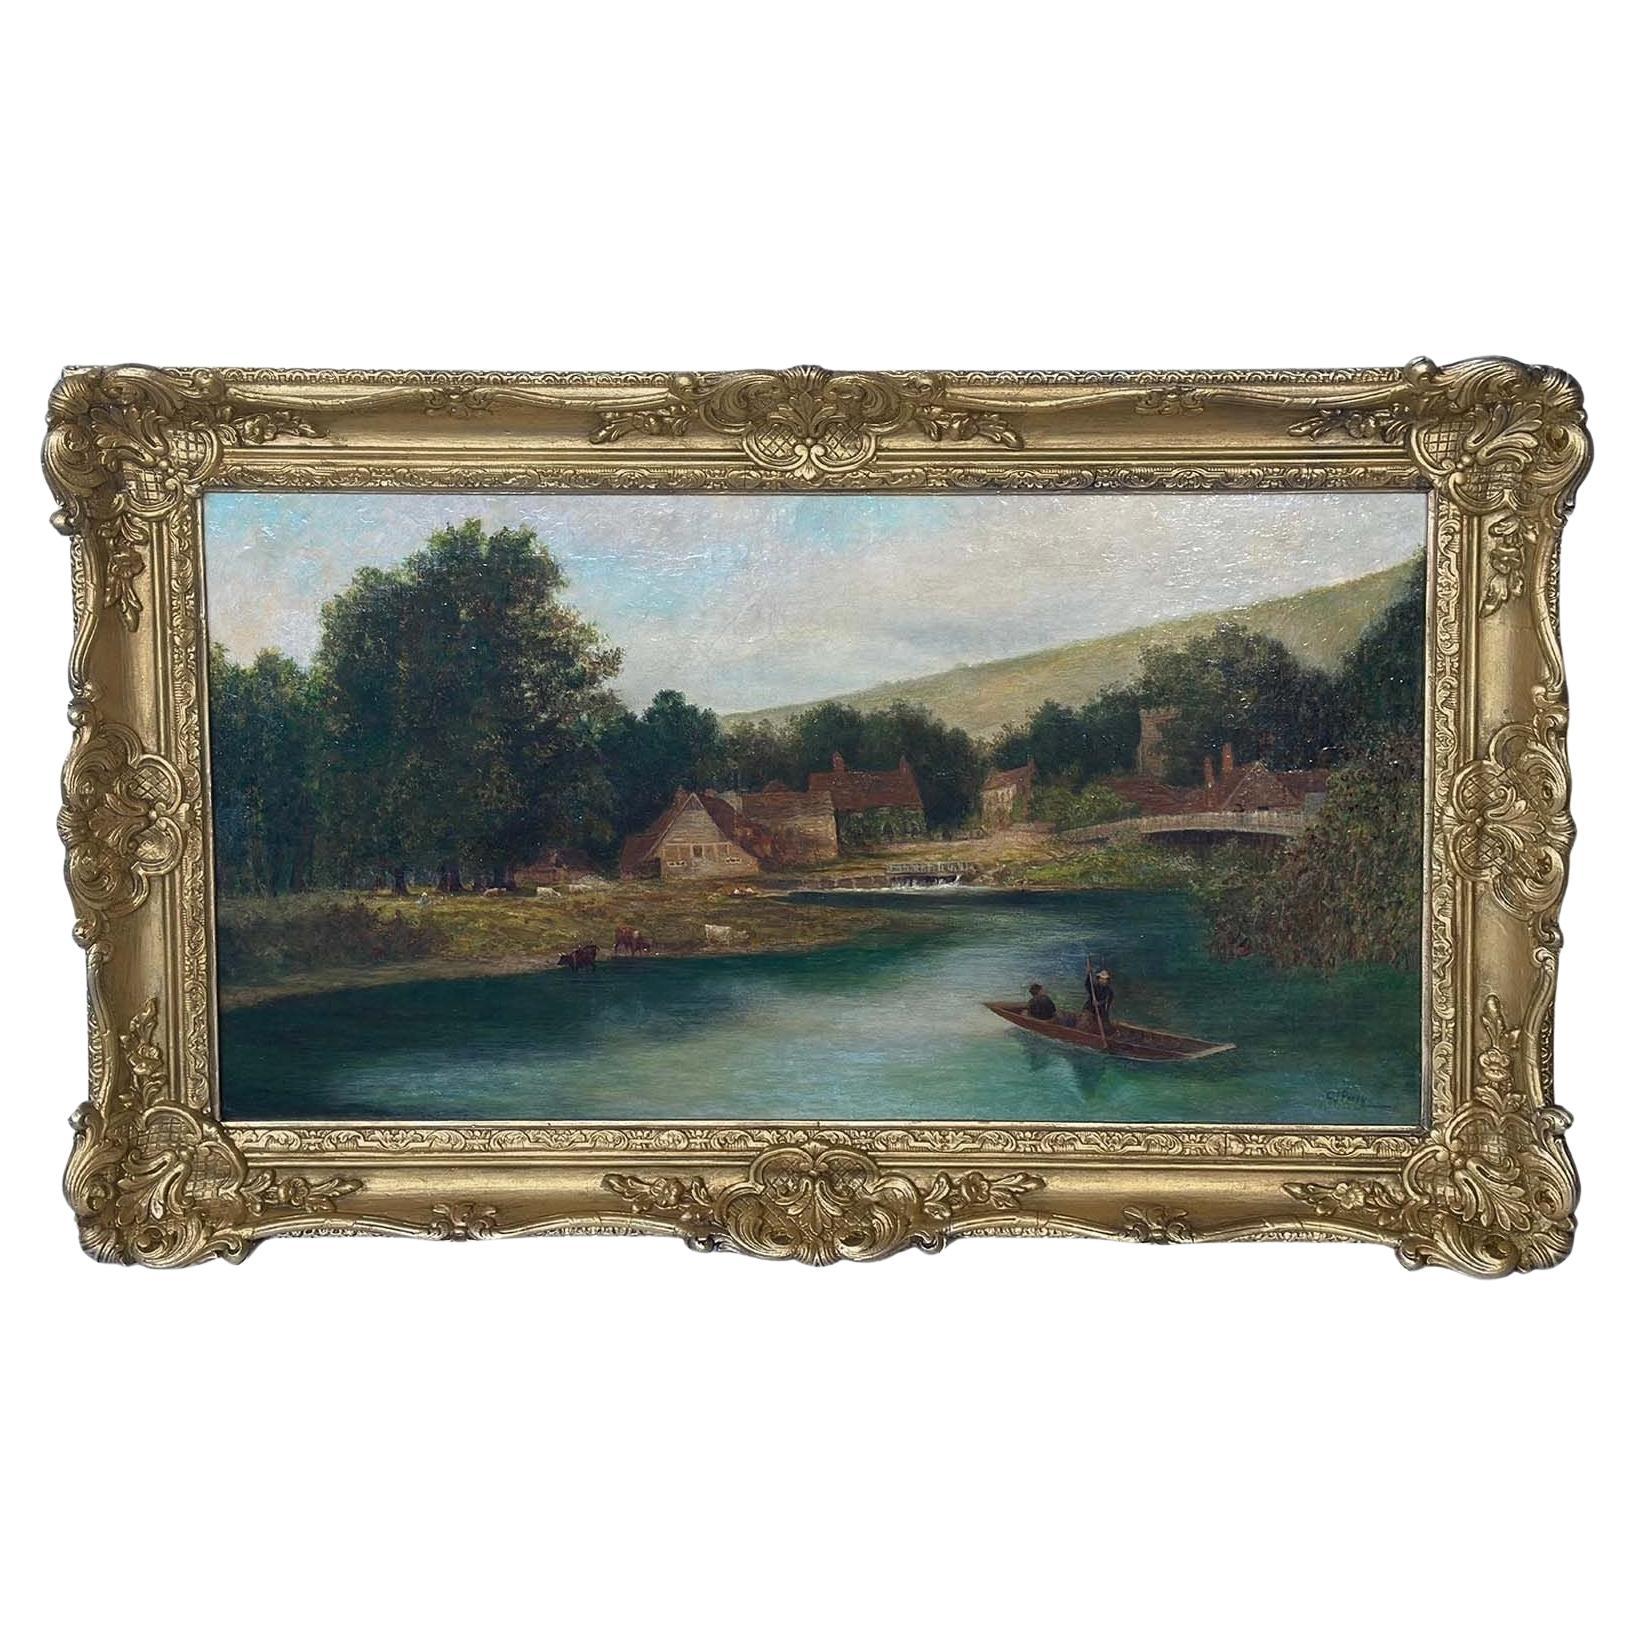 Landschaft aus dem späten 19. Jahrhundert von C.J. Perry